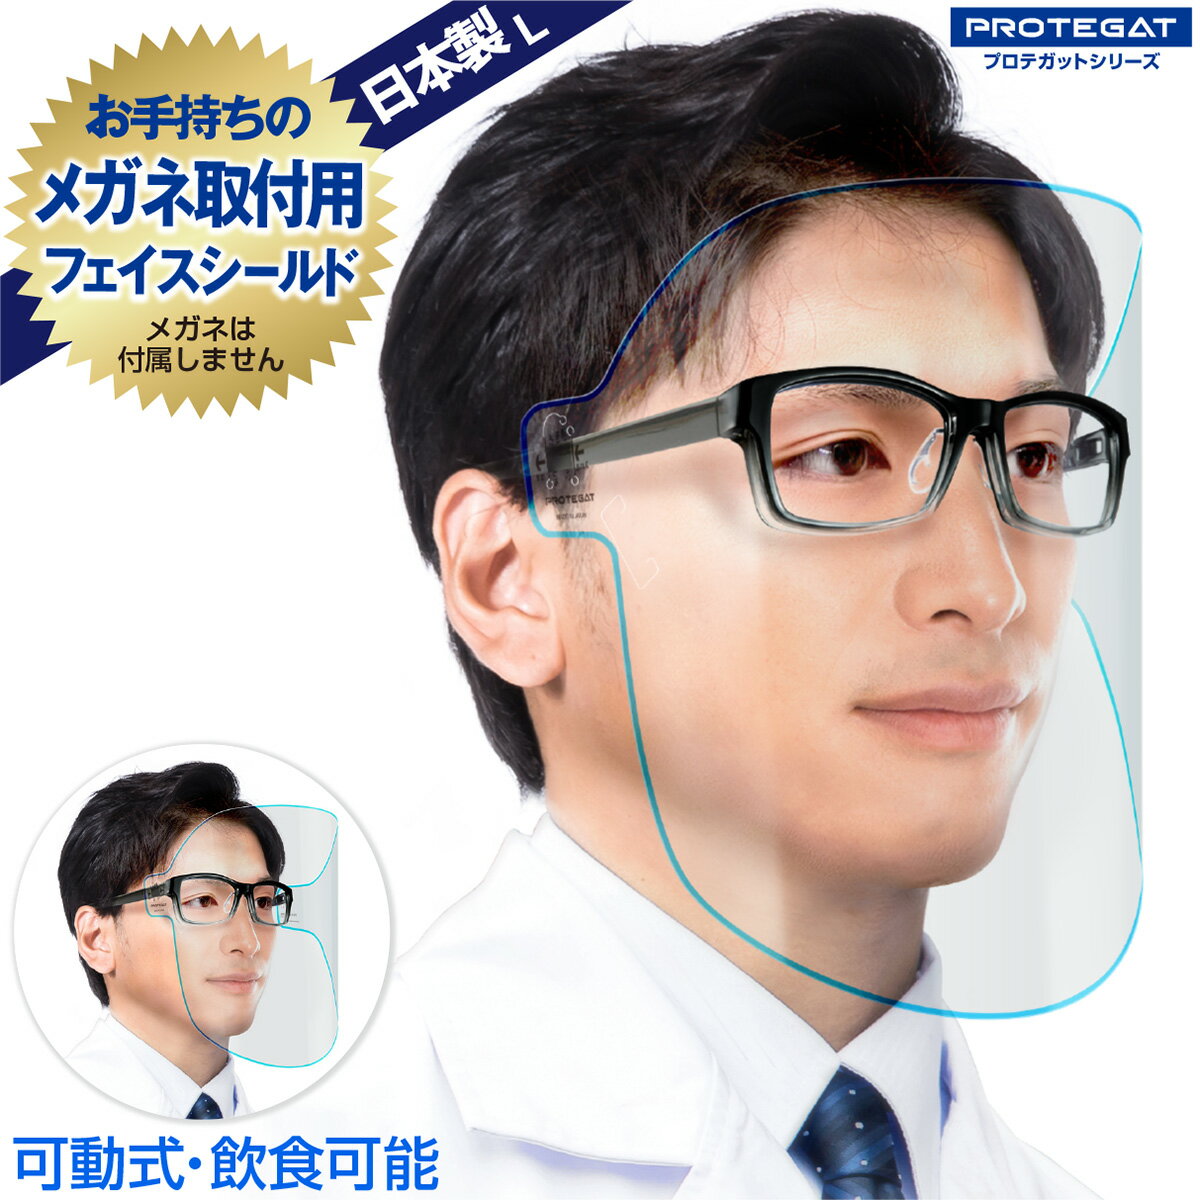 飲食可能 フェイスシールド Lサイズ 日本製 可動式 自社工場 1枚 メガネ 感染対策 飛沫対策 透明 青ライン フェイスガード 眼鏡 取り付け用 L プロテガットシリーズ